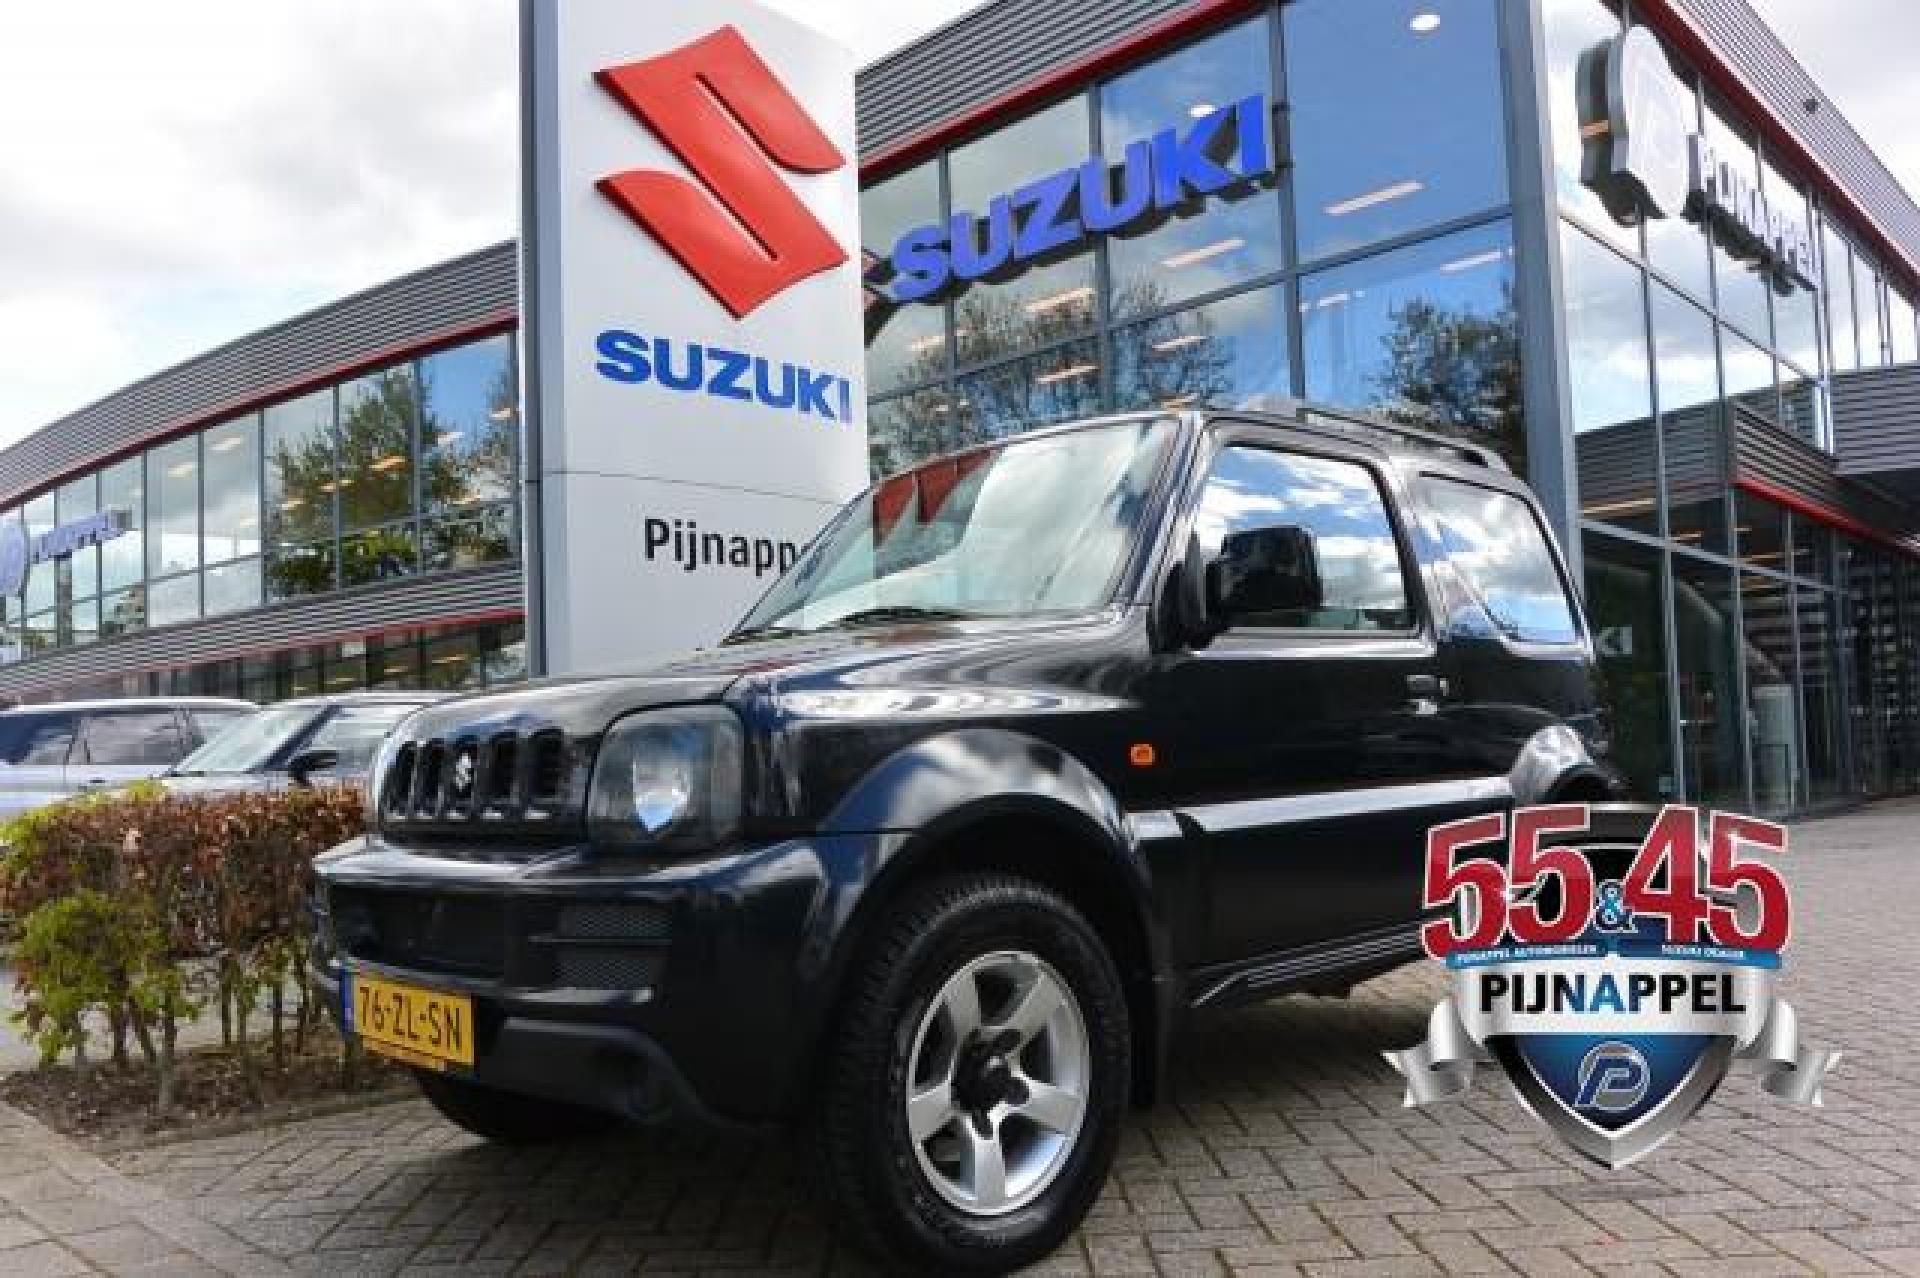 Tweedehands Suzuki occasion kopen